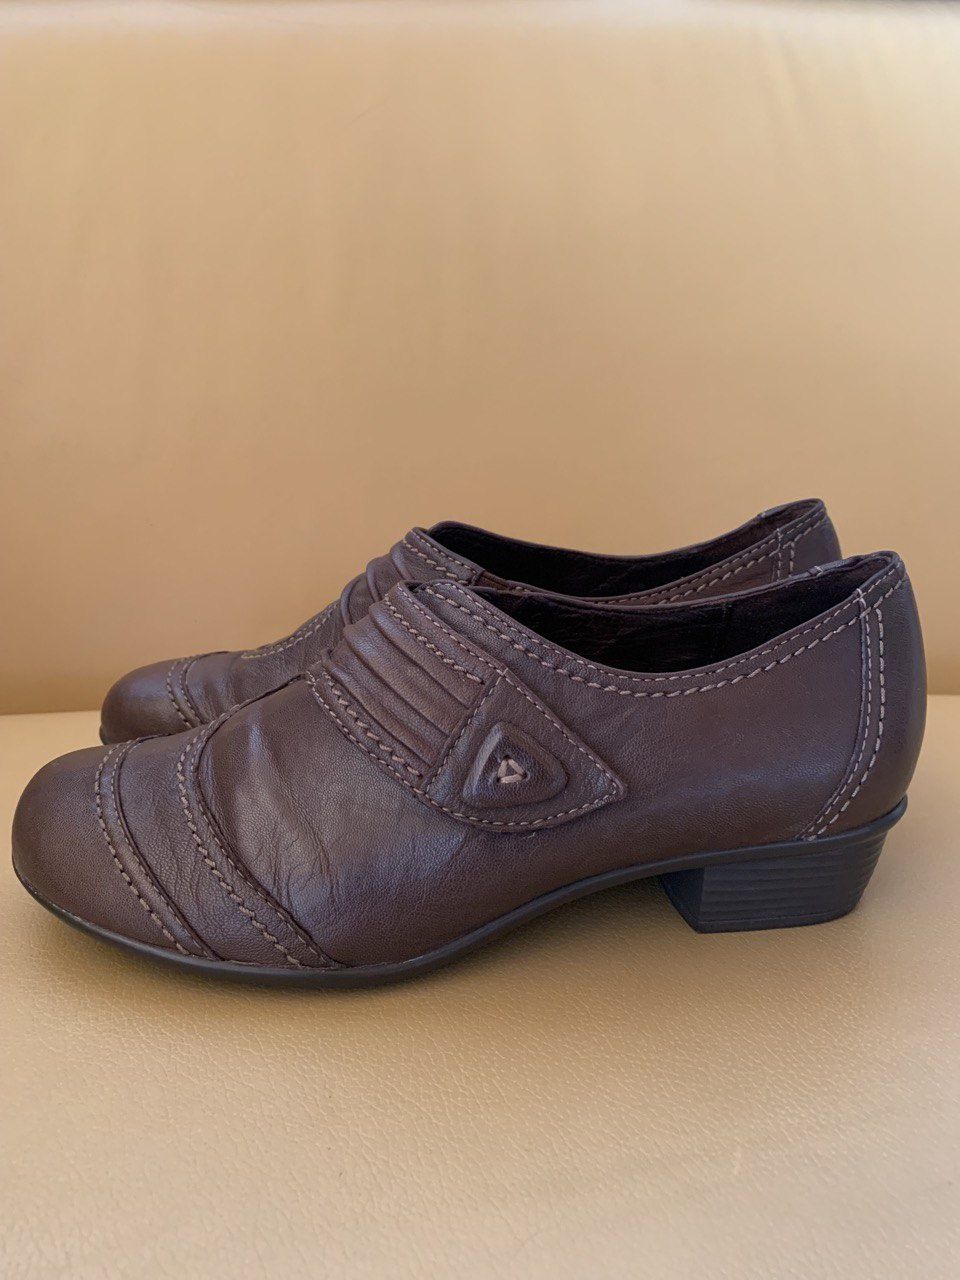 Женская обувь Европейского бренда «Medicus»